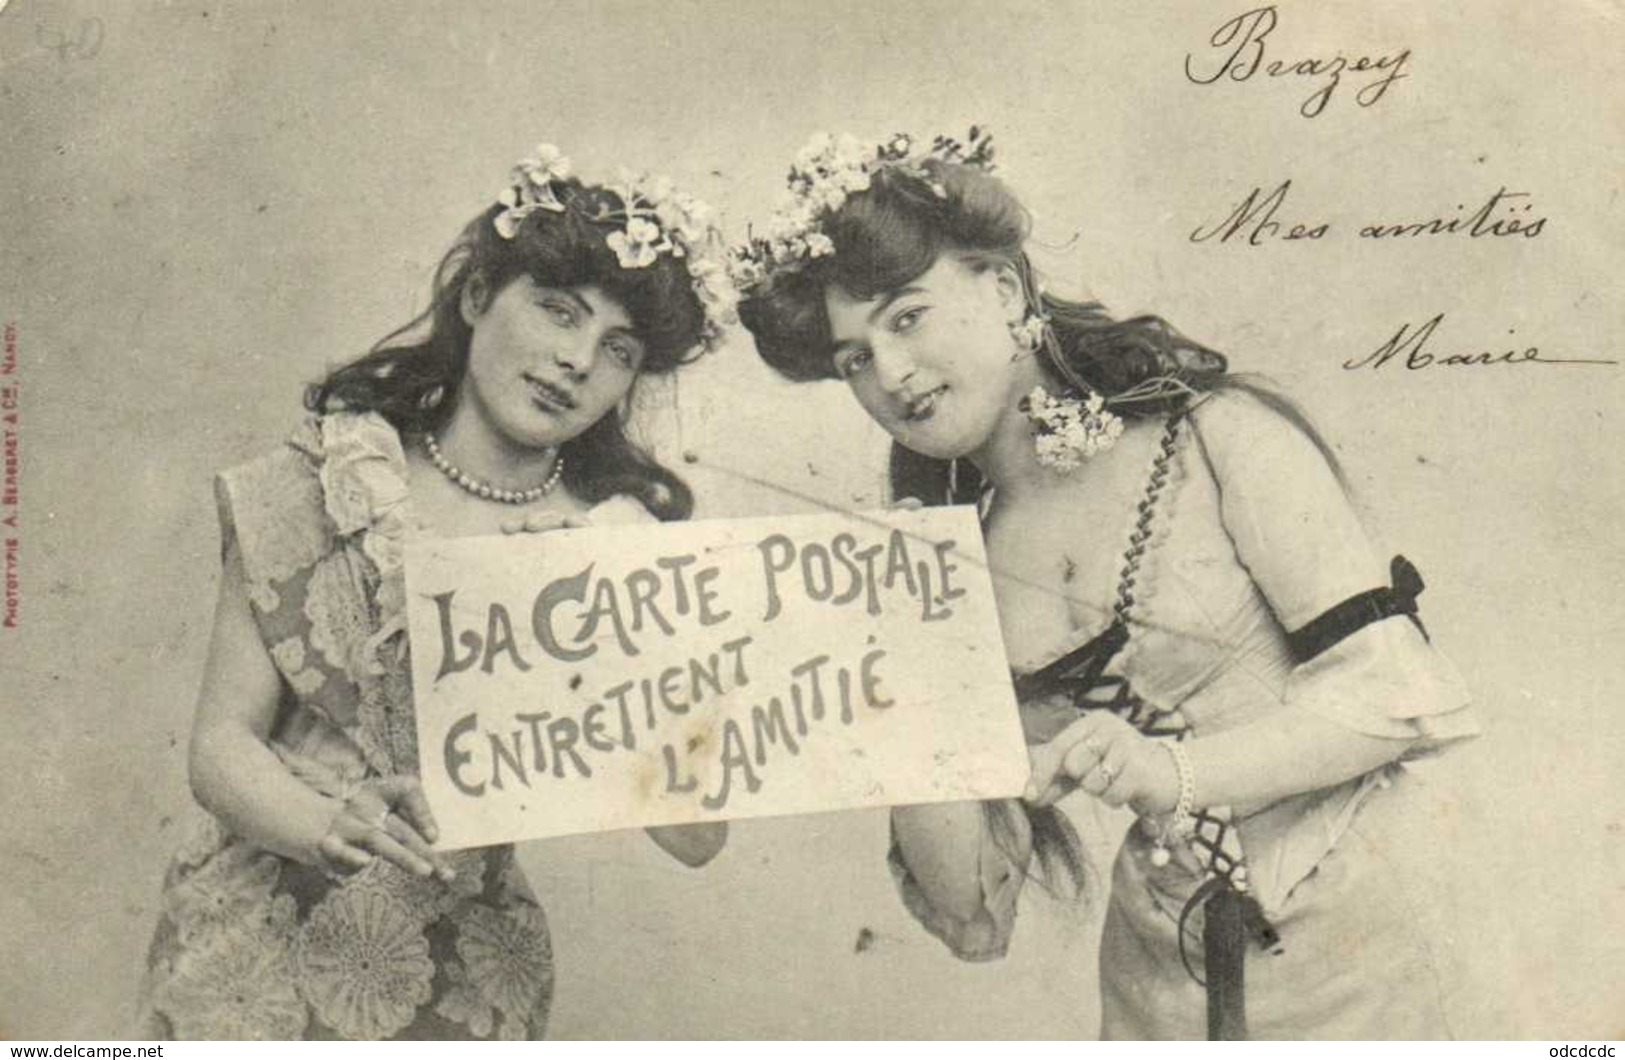 Bergeret Jeunes Femmes La Carte Postale Entretient L'Amitié RV - Women